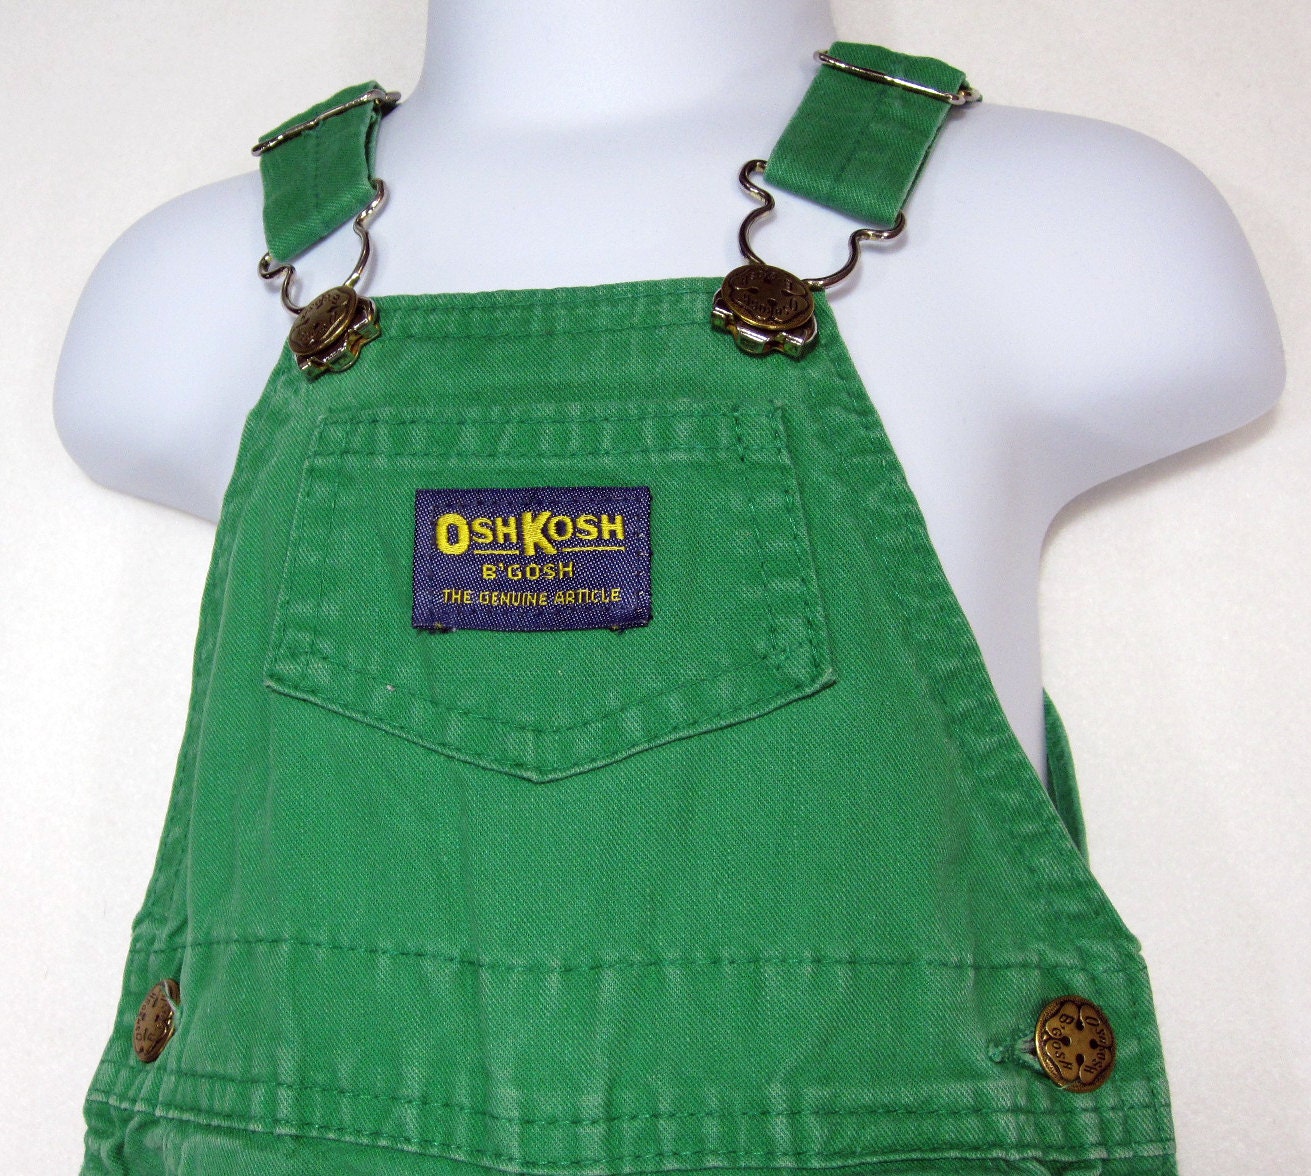 Vintage Green OshKosh B'Gosh Vestbak Overalls kids